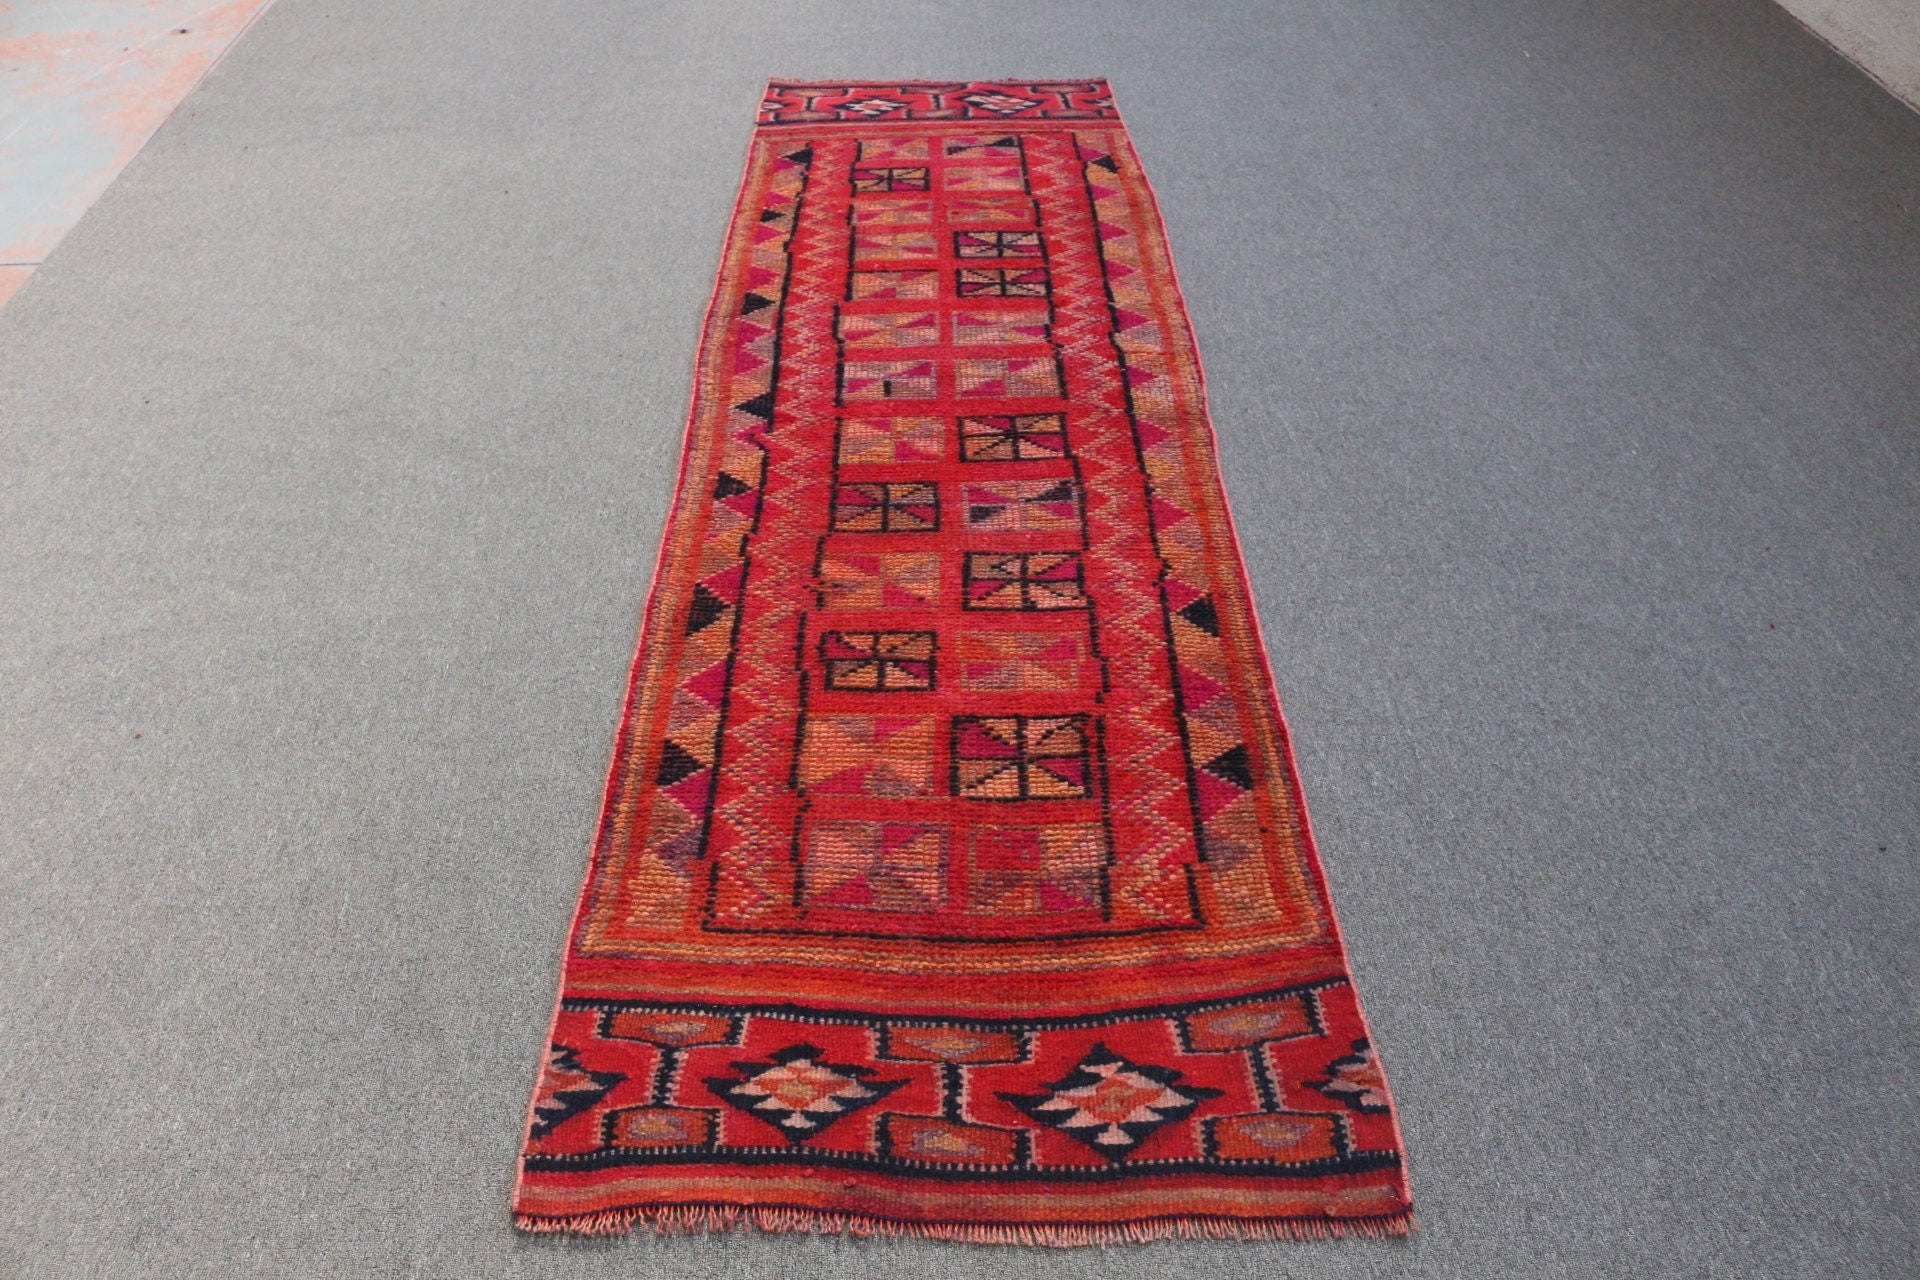 Bohemian Rug, Oushak Rugs, 2.7x9 ft Runner Rugs, Stair Rug, Rugs for Runner, Red Antique Rugs, Turkish Rugs, Bedroom Rug, Vintage Rugs